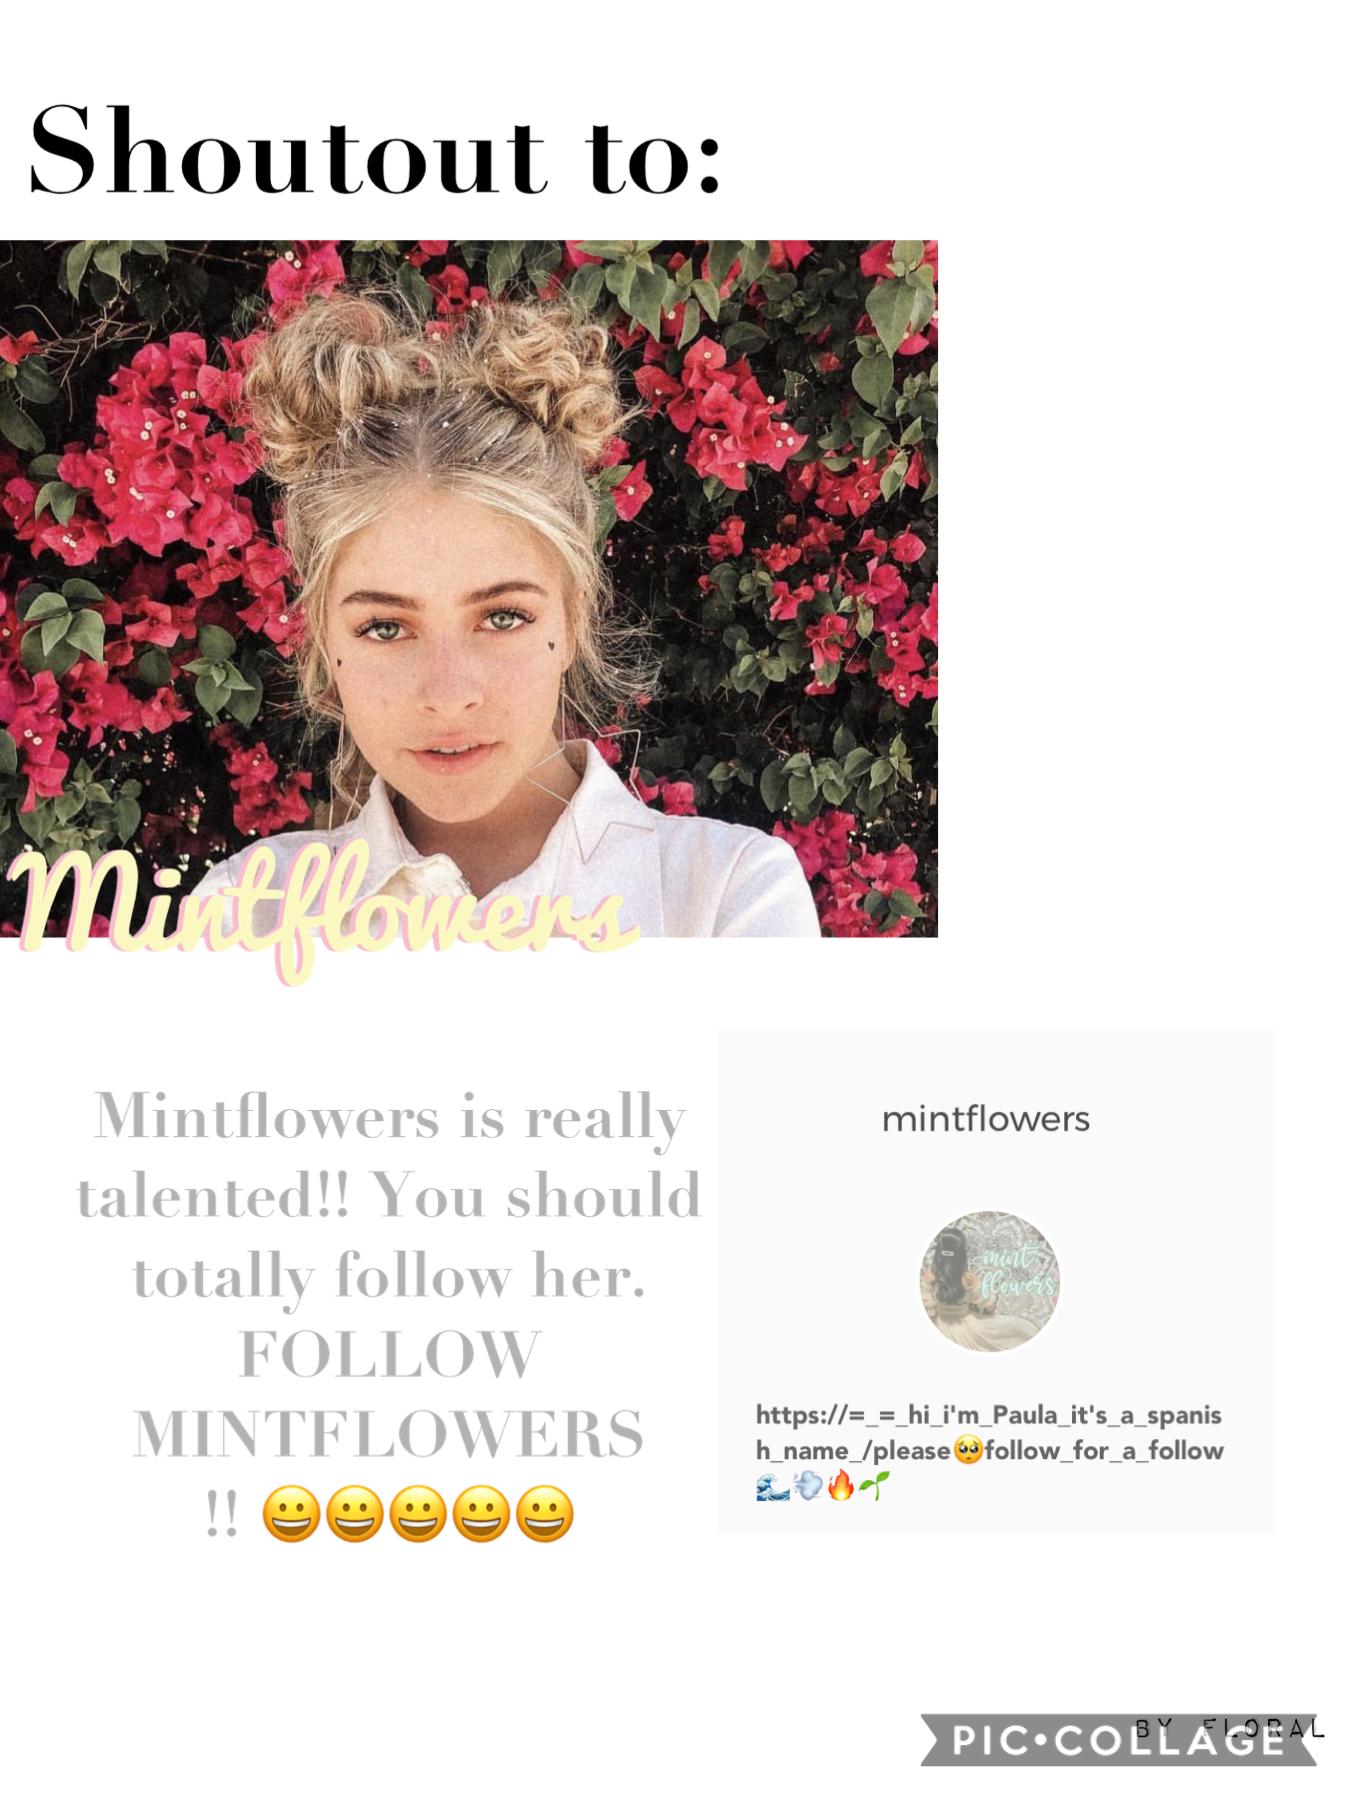 Mintflowers!